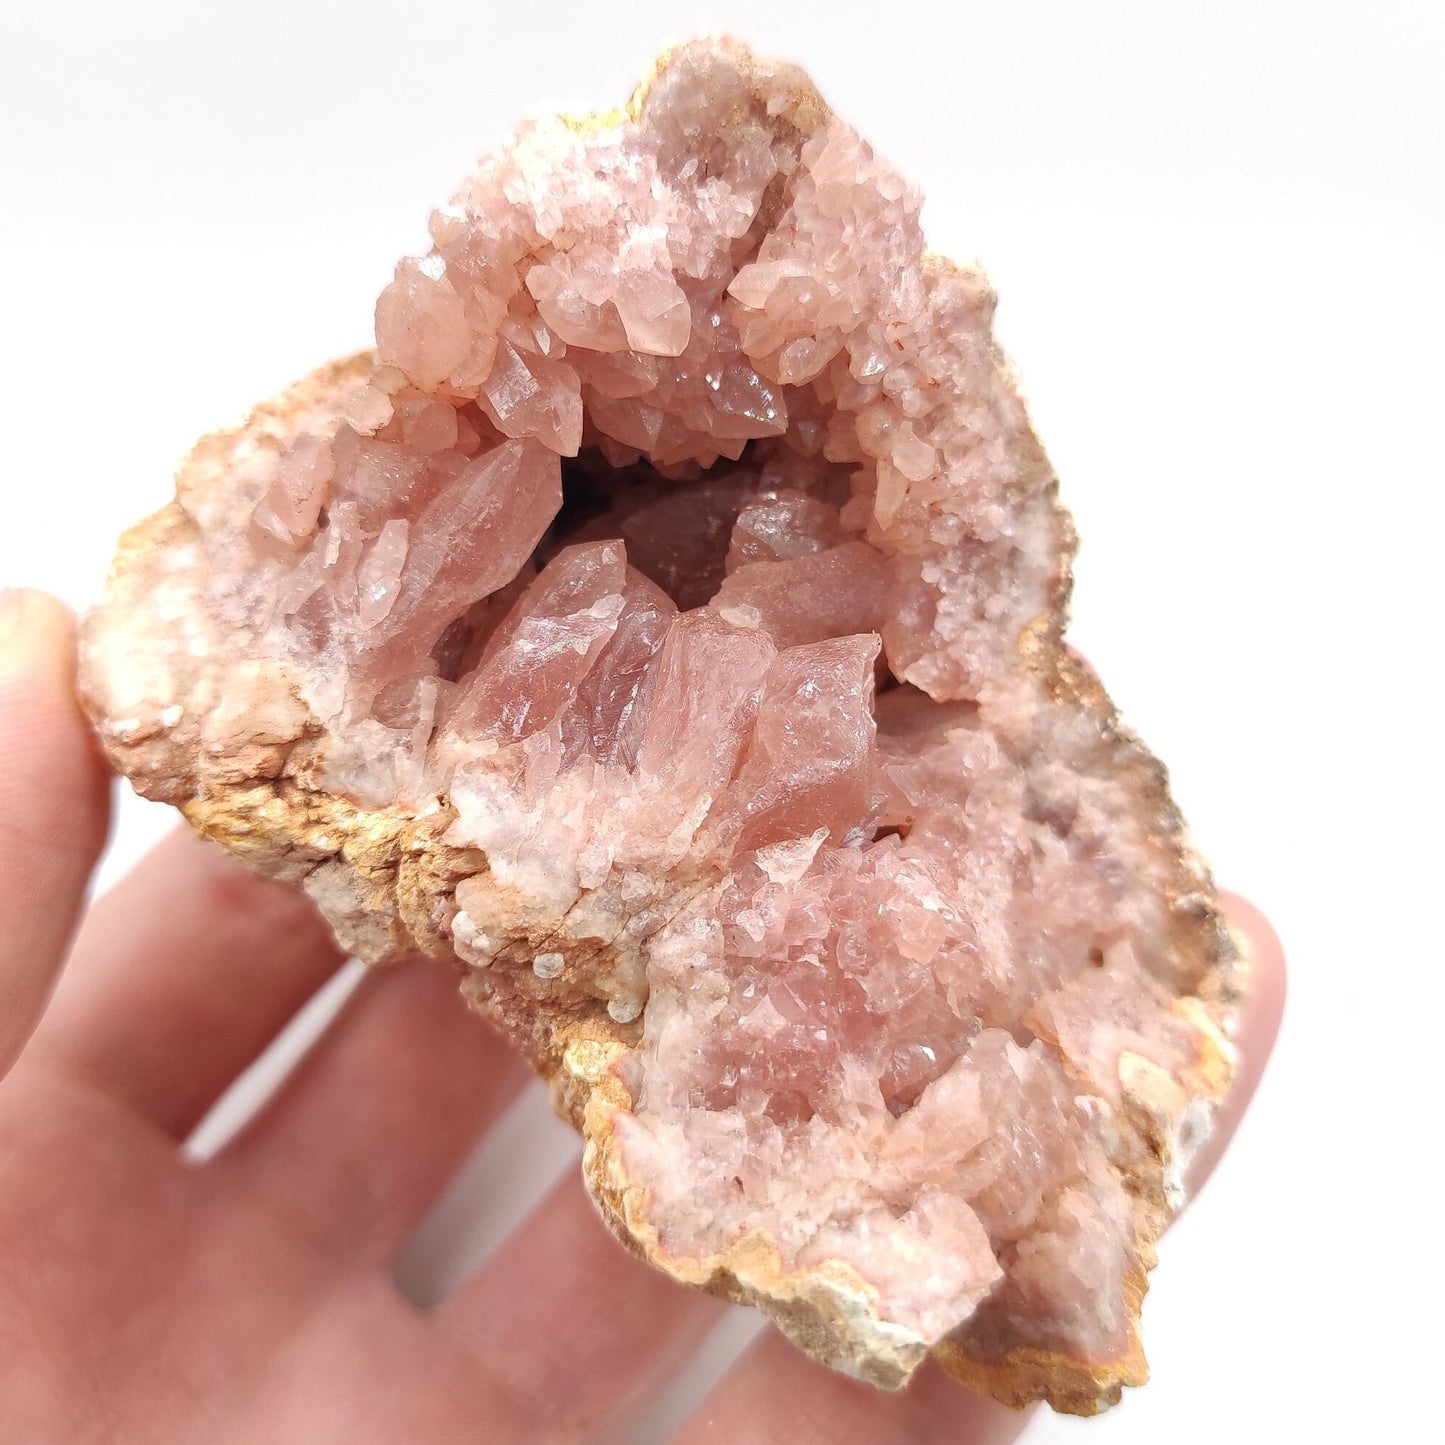 206g Pink Amethyst Geode - Neuquén, Argentina - Natural Raw Pink Amethyst Crystal - Pink Amethyst Geode Cluster - Crystallized Pink Amethyst